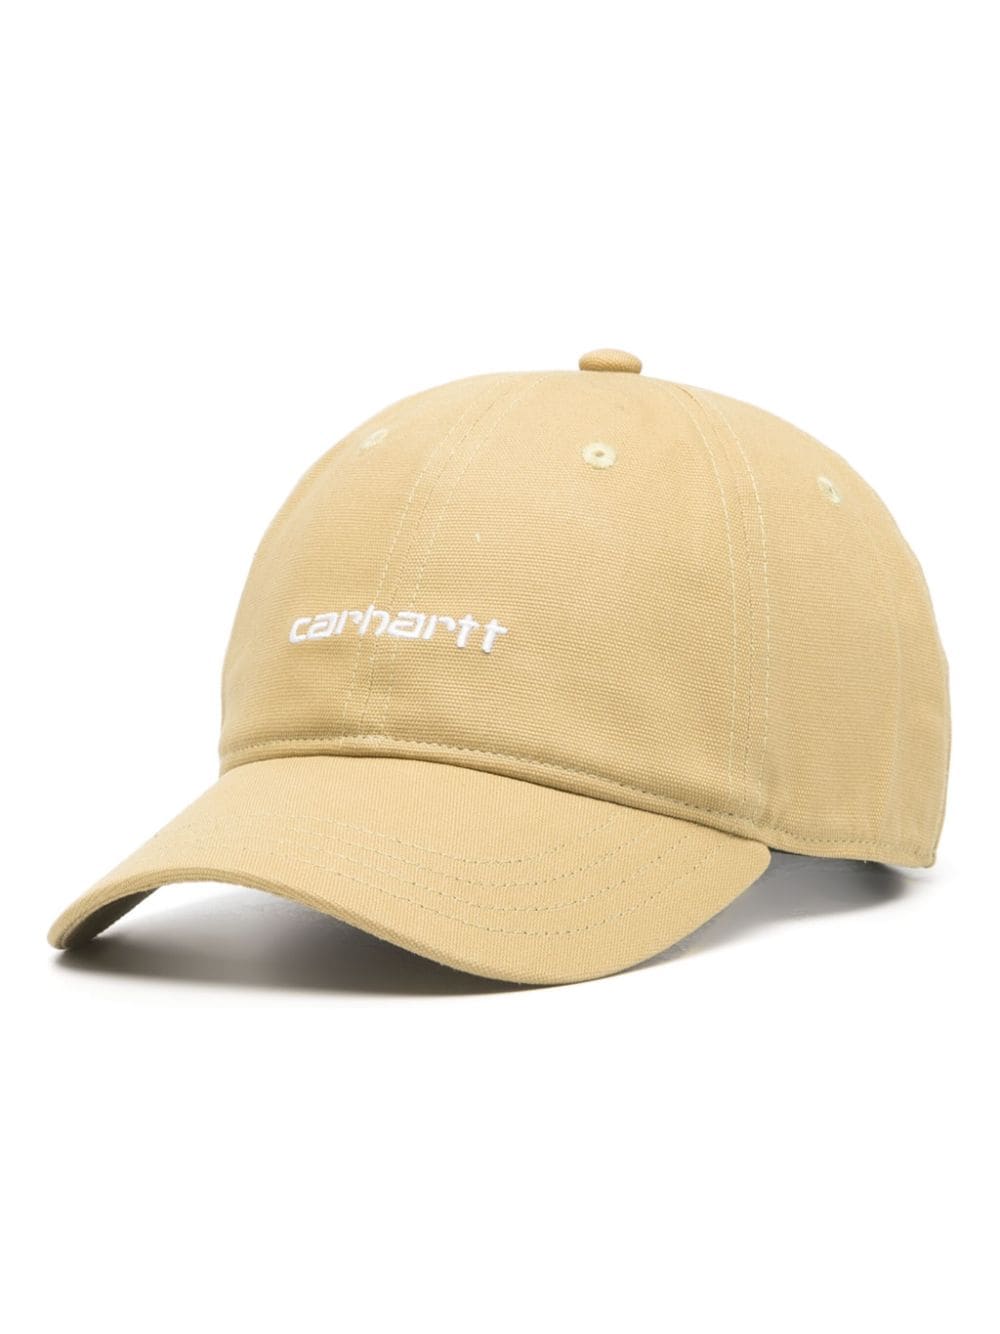 Carhartt WIP Canvas Script cotton hat - Neutrals von Carhartt WIP